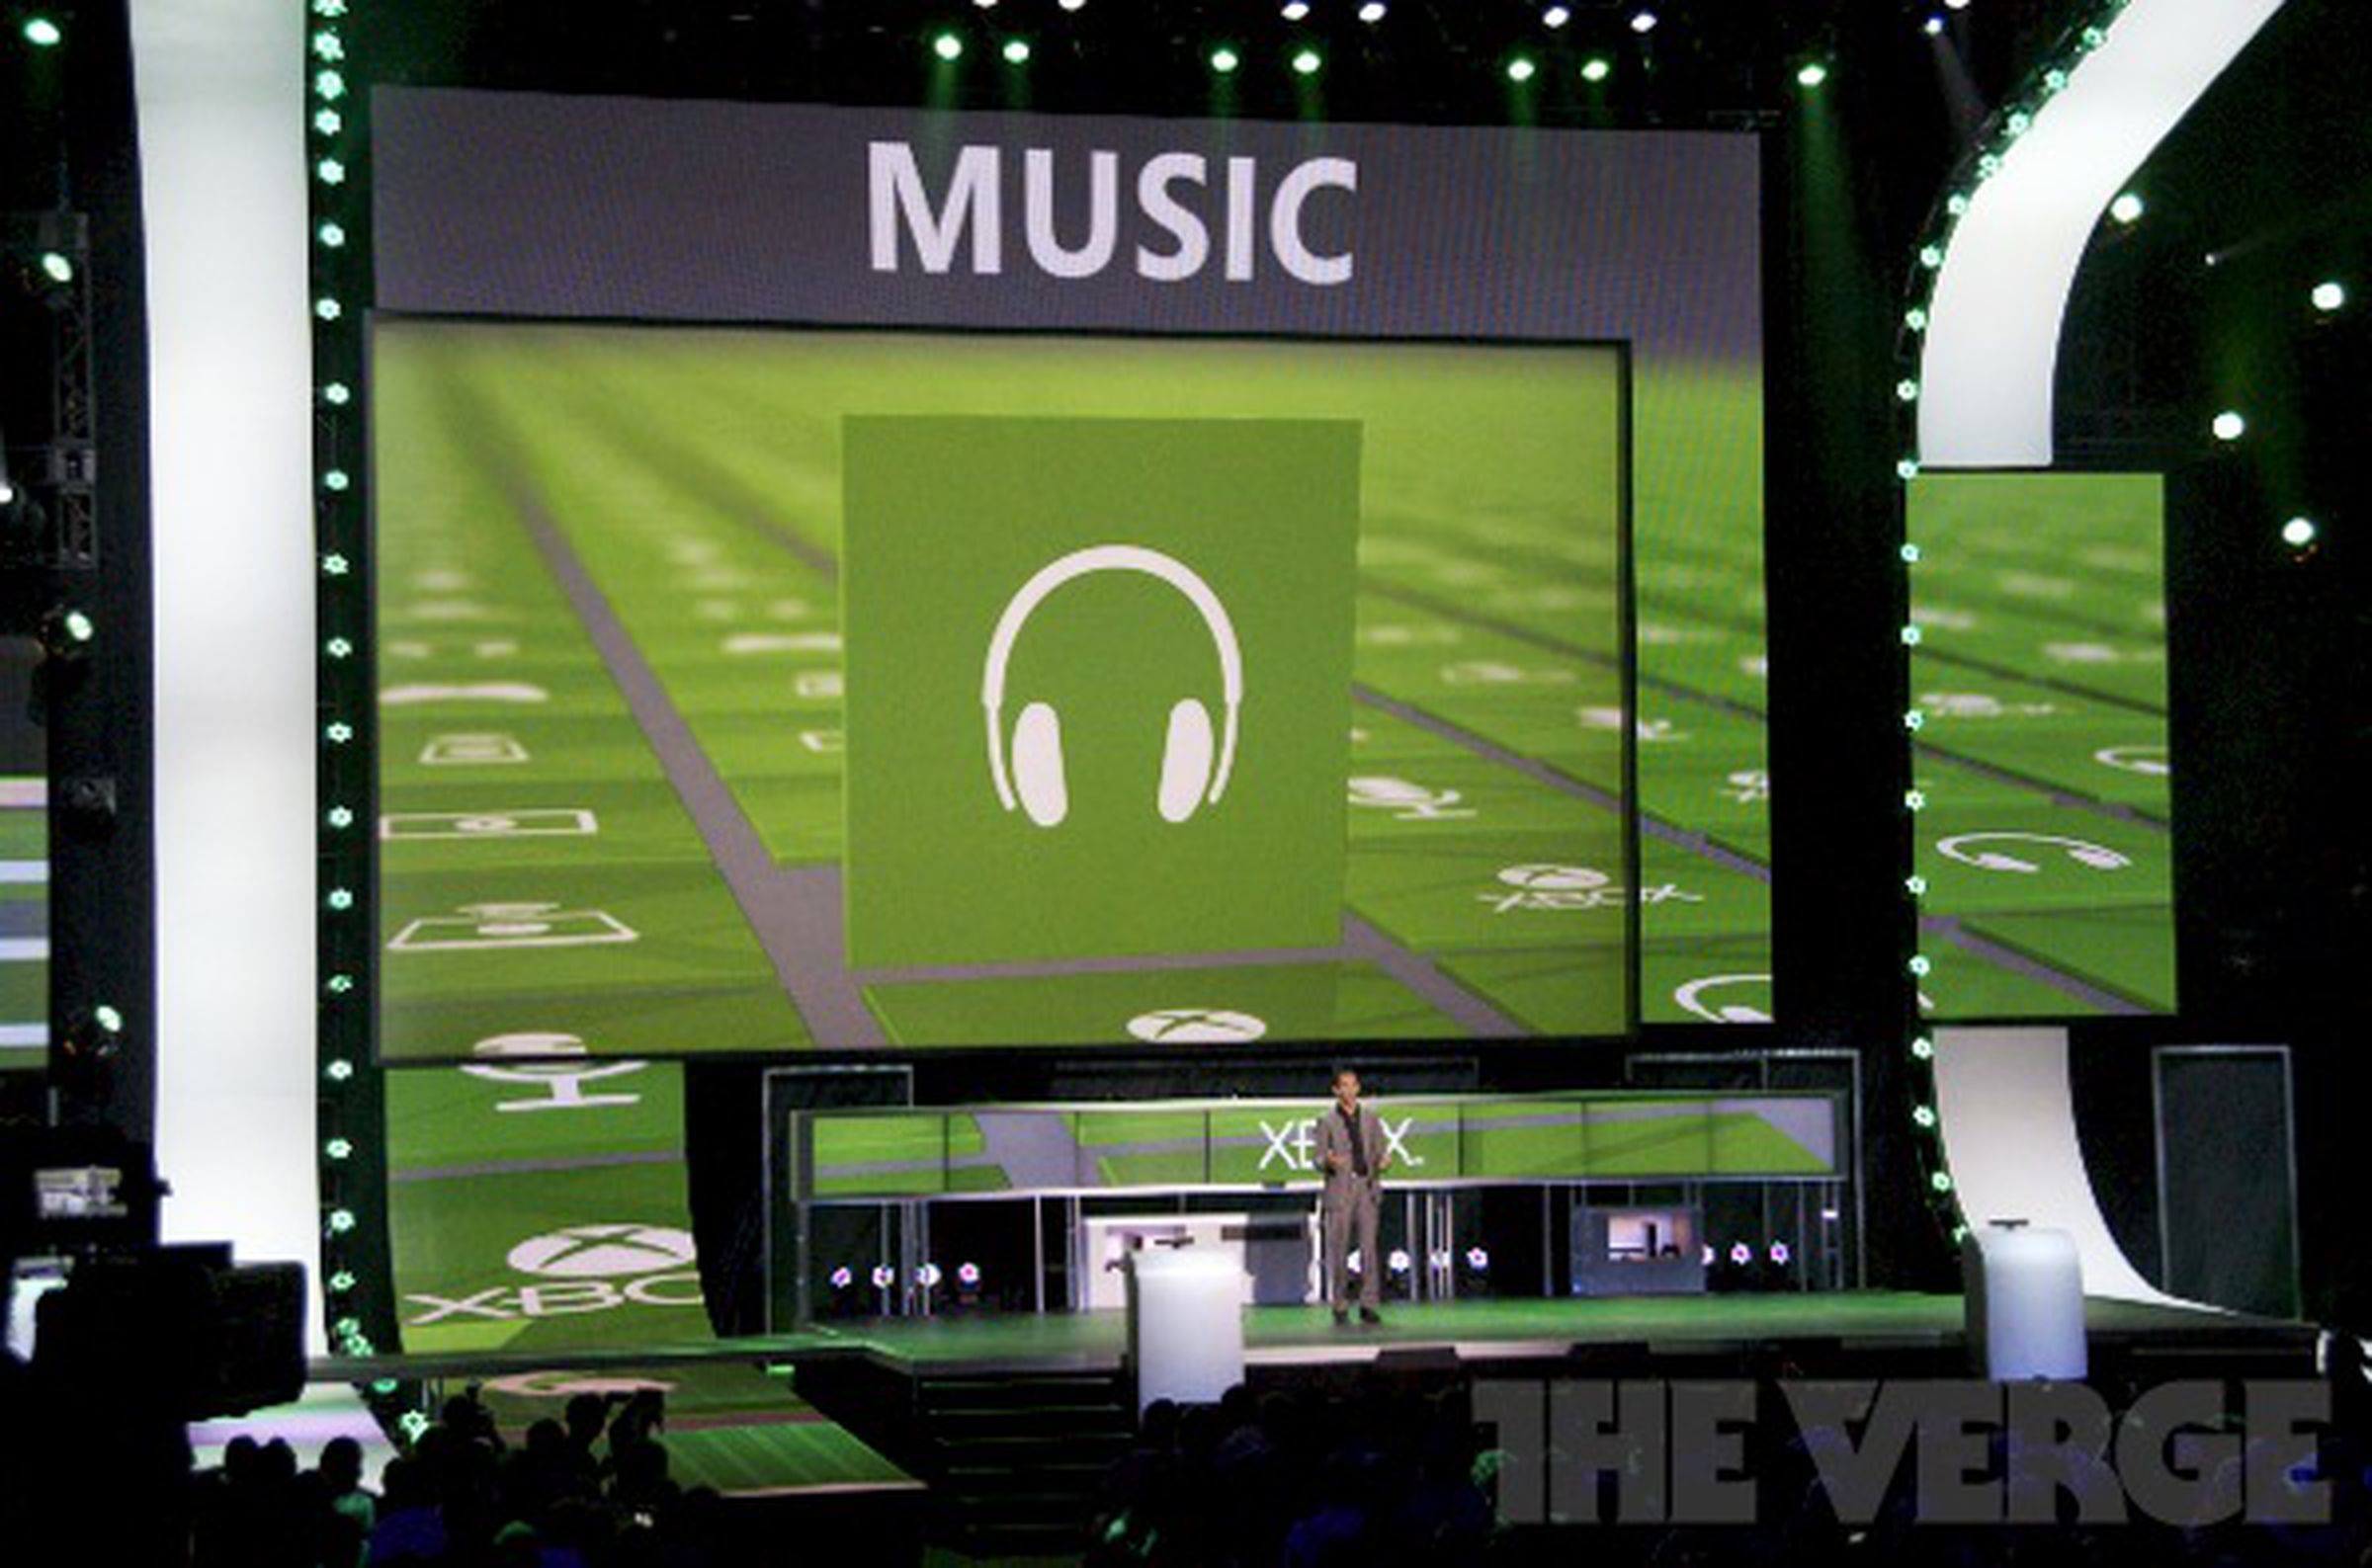 Xbox Music E3 2012 press conference photos